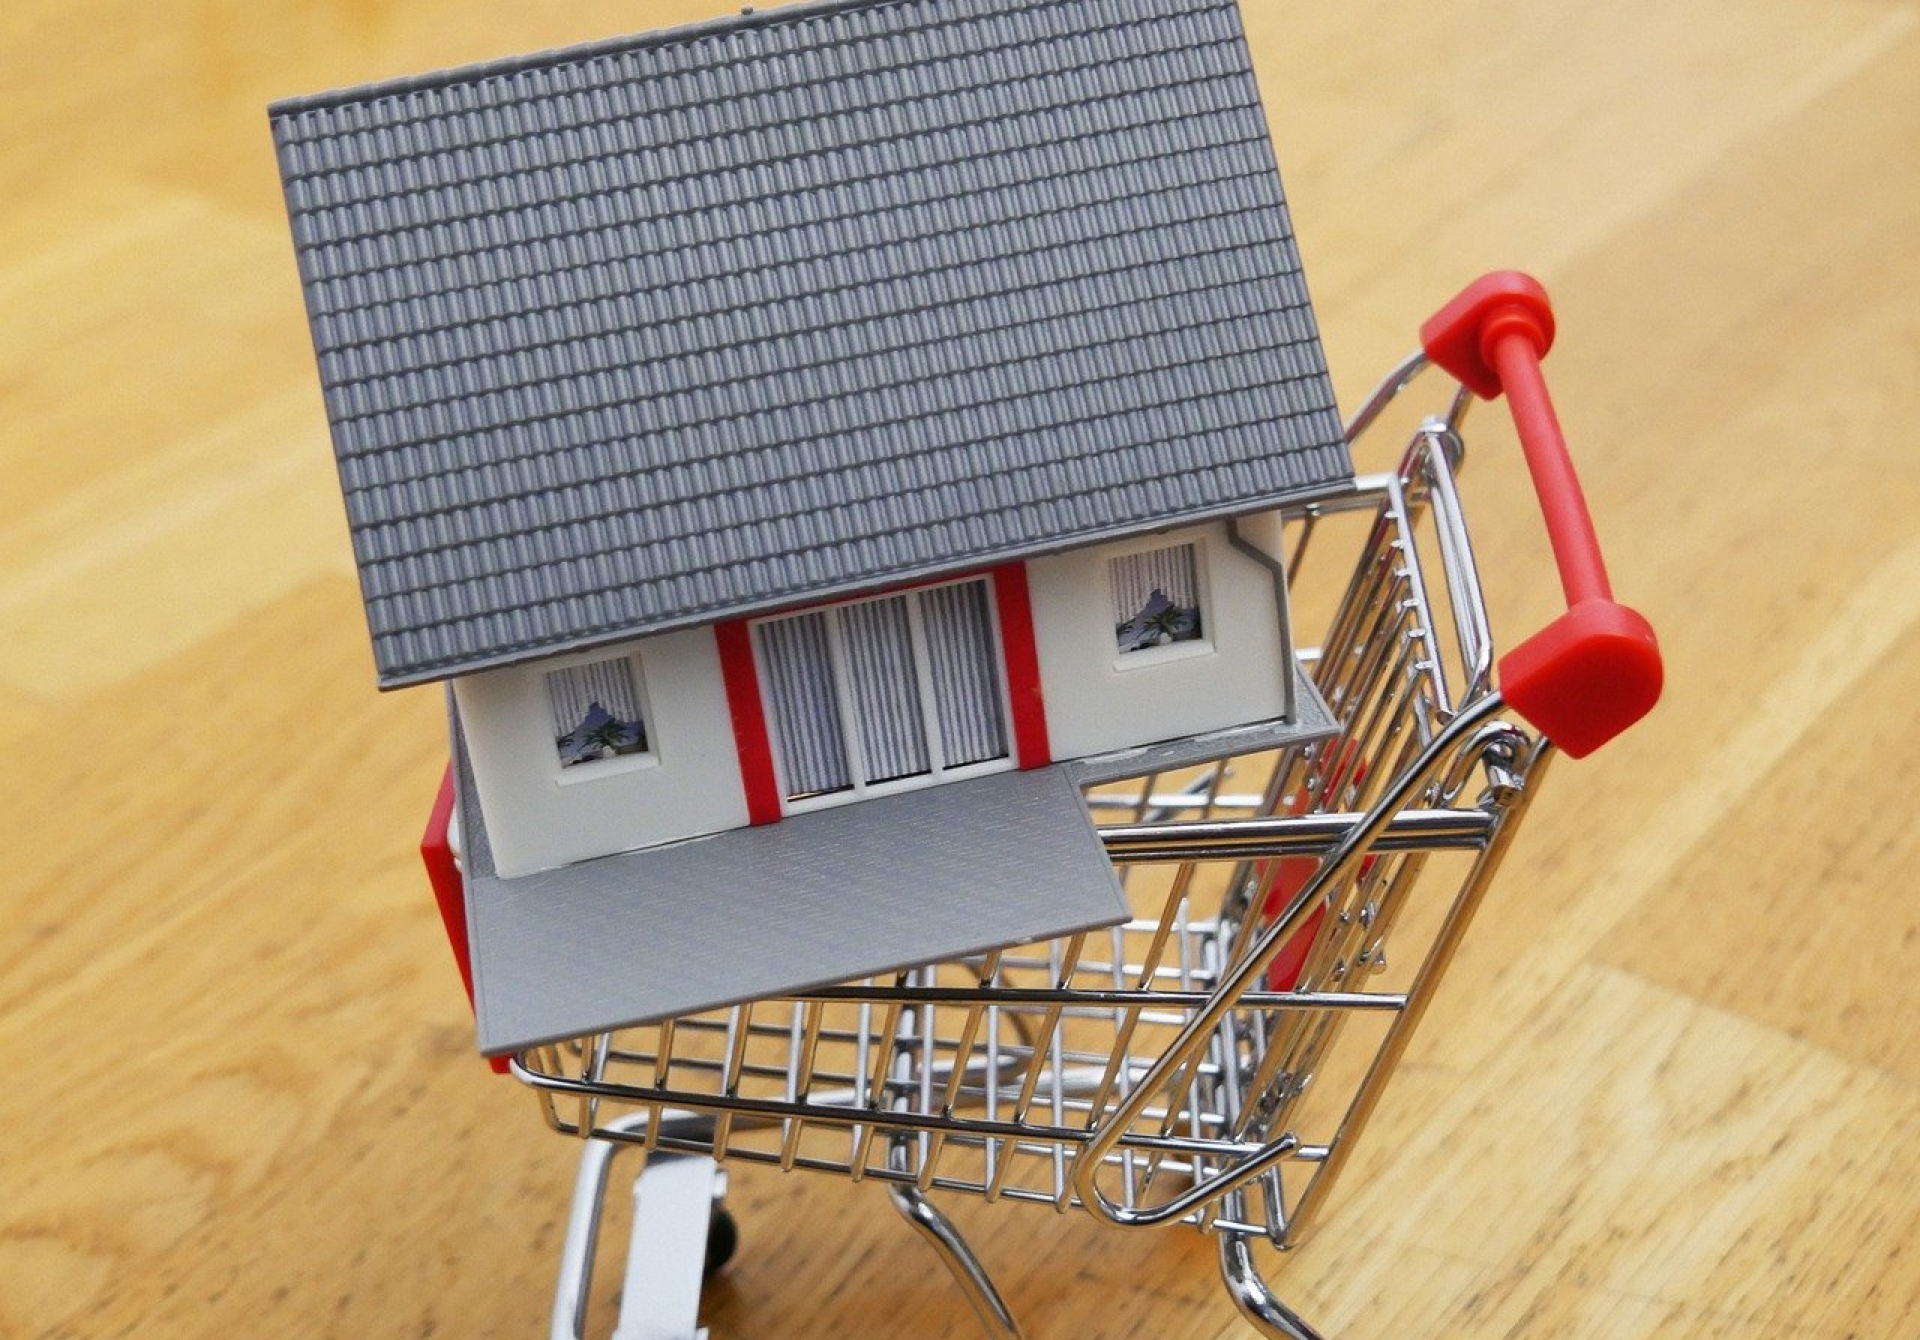 Quelles sont les étapes d’un achat immobilier ?